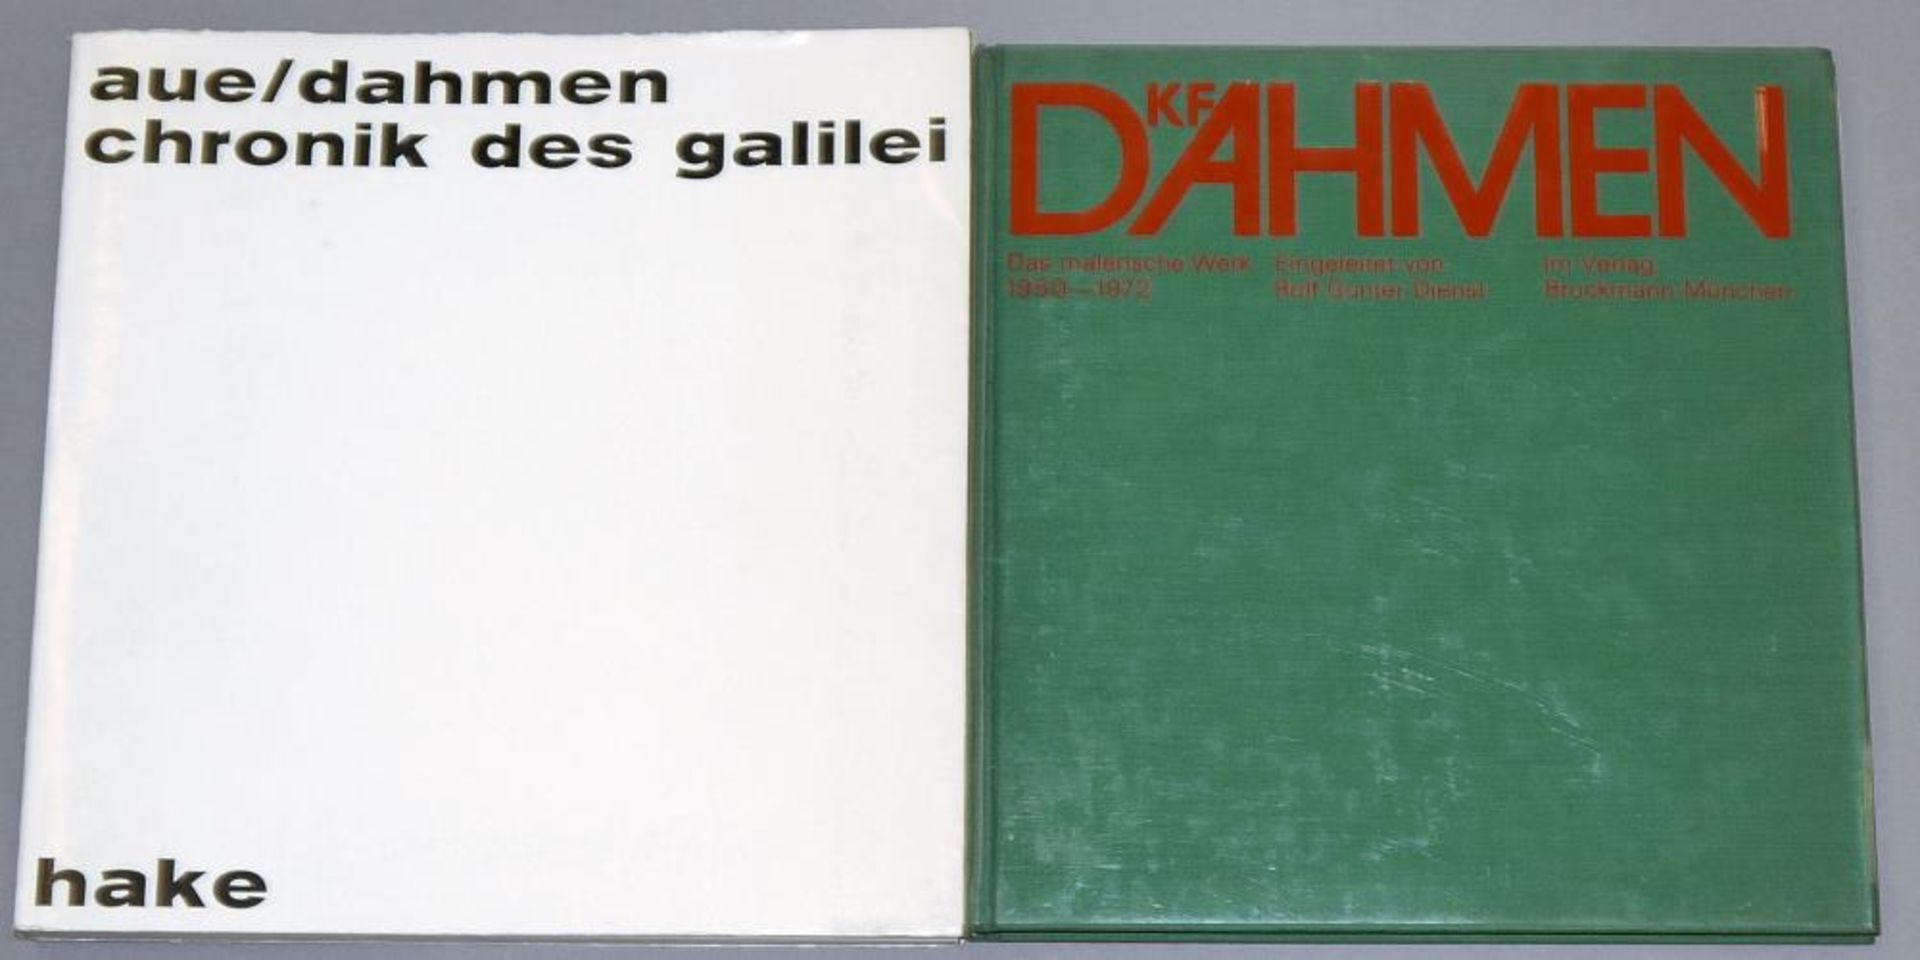 Karl Fred Dahmen, 10 sign. Graphiken, 1969/71/74/75/78, für Selbstbesichtiger! Karl Fred Dahmen, - Bild 4 aus 4